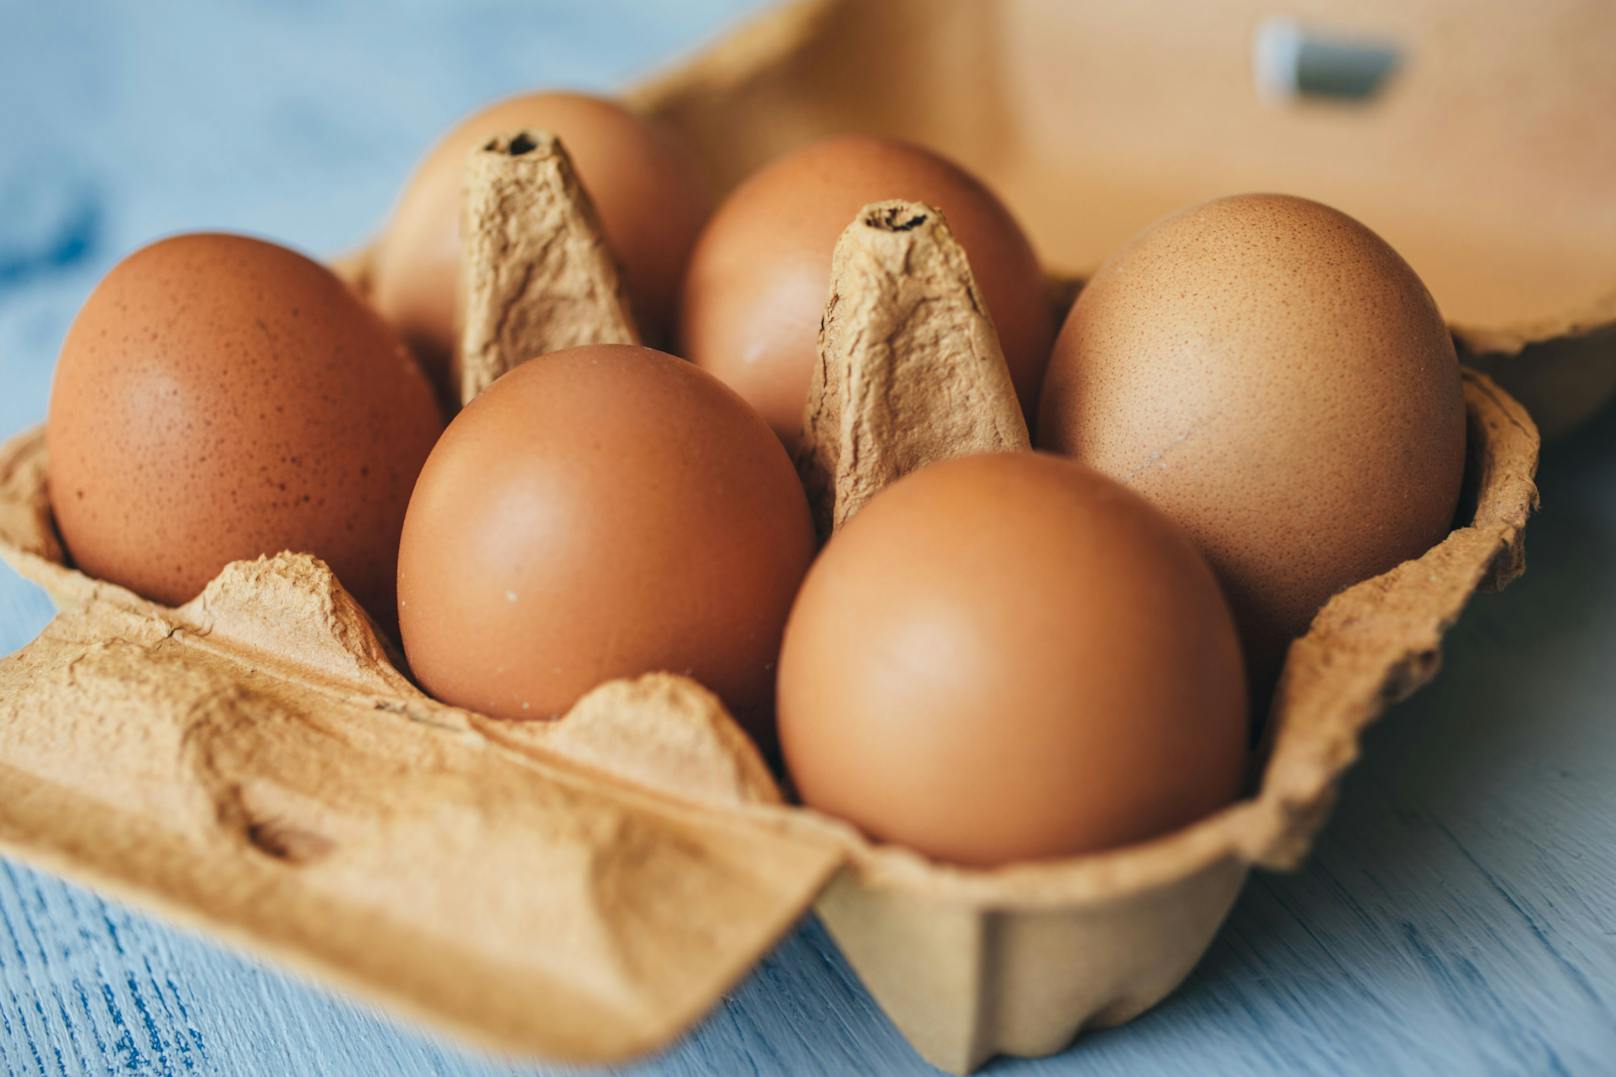 Wer rohe <strong>Eier</strong> einfrieren möchte, muss diese zuerst aufschlagen und kann das Ei verquirlt oder Eiklar und Dotter getrennt in einem Gefrierbeutel oder anderem Behältnis in das Tiefkühlfach geben. Gibt man das ganze Ei samt Schale in den Tiefkühler, würde sich die Flüssigkeit beim gefrieren ausdehnen und die Schale zum Platzen bringen.